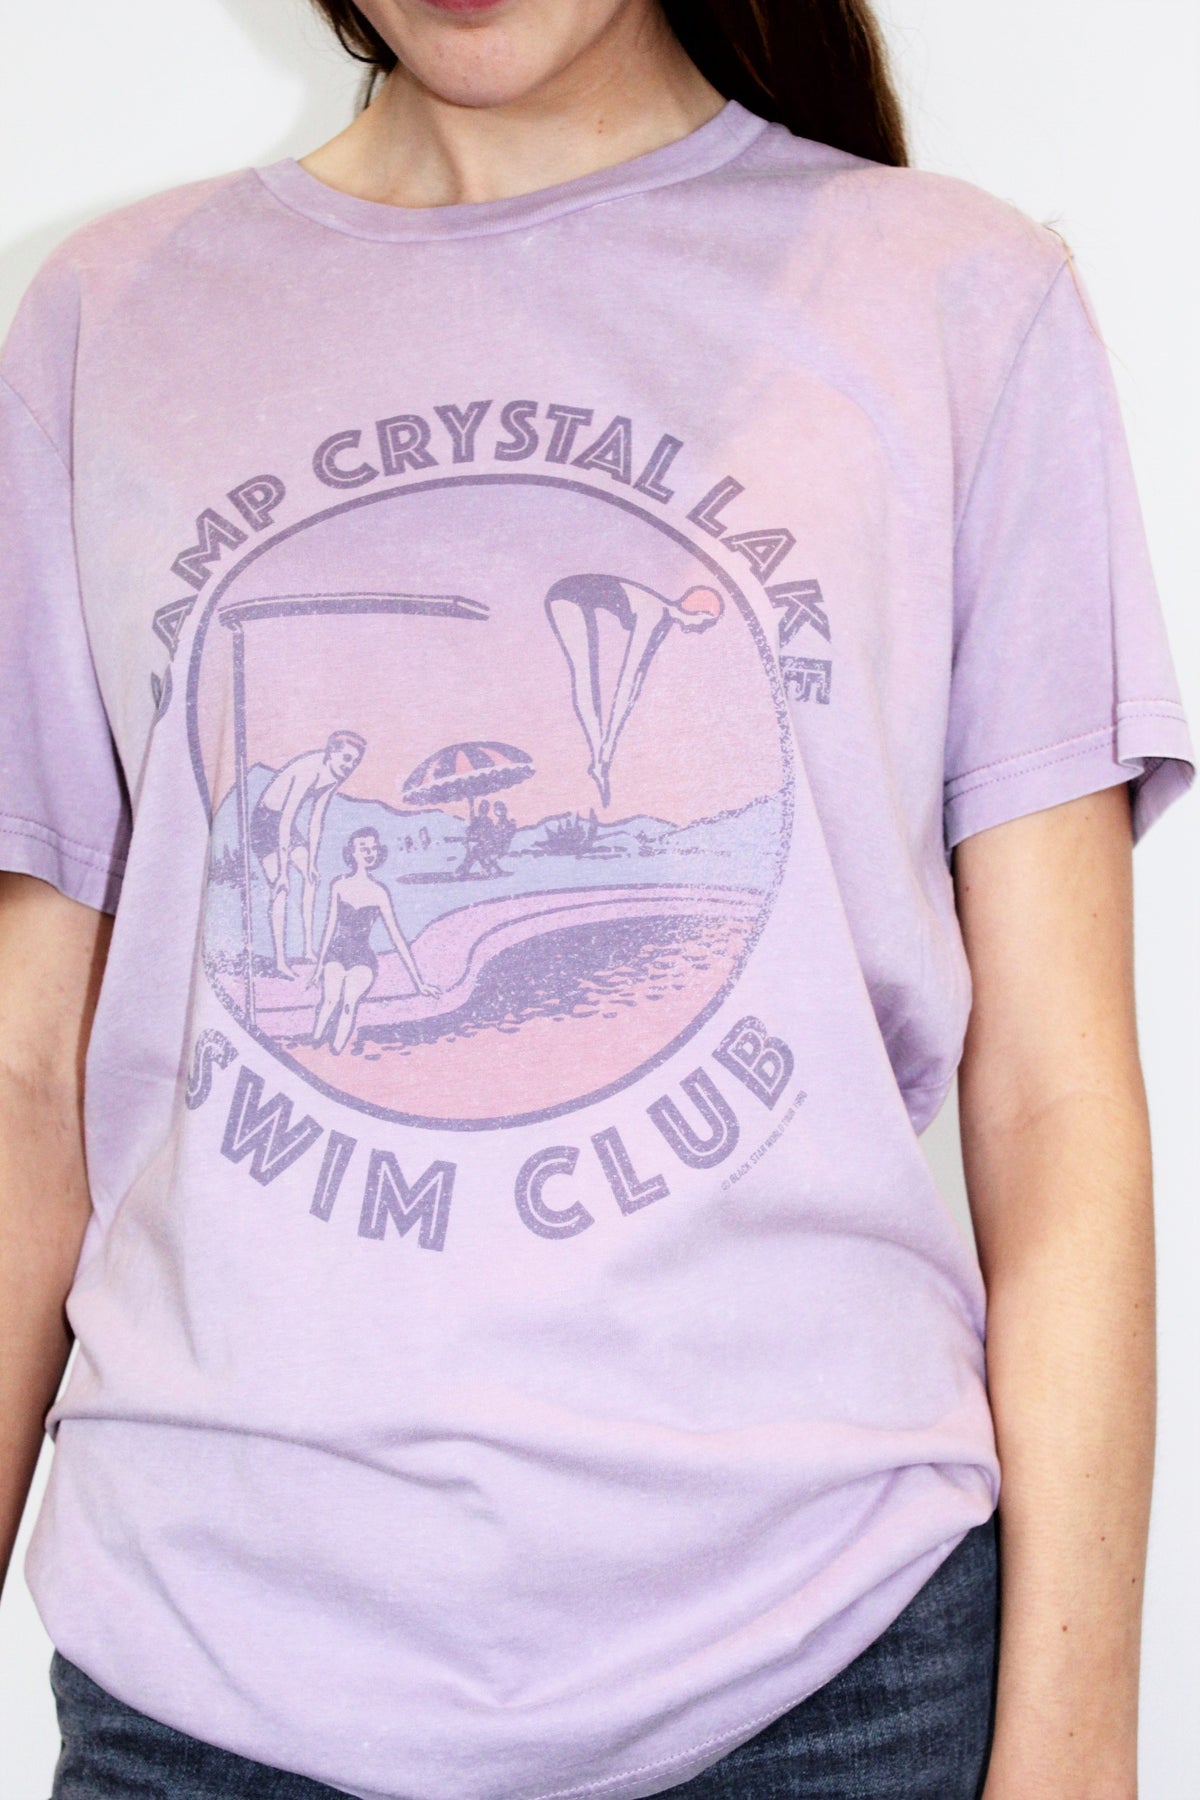 BS Swim Club Tee in Vintage Lilac